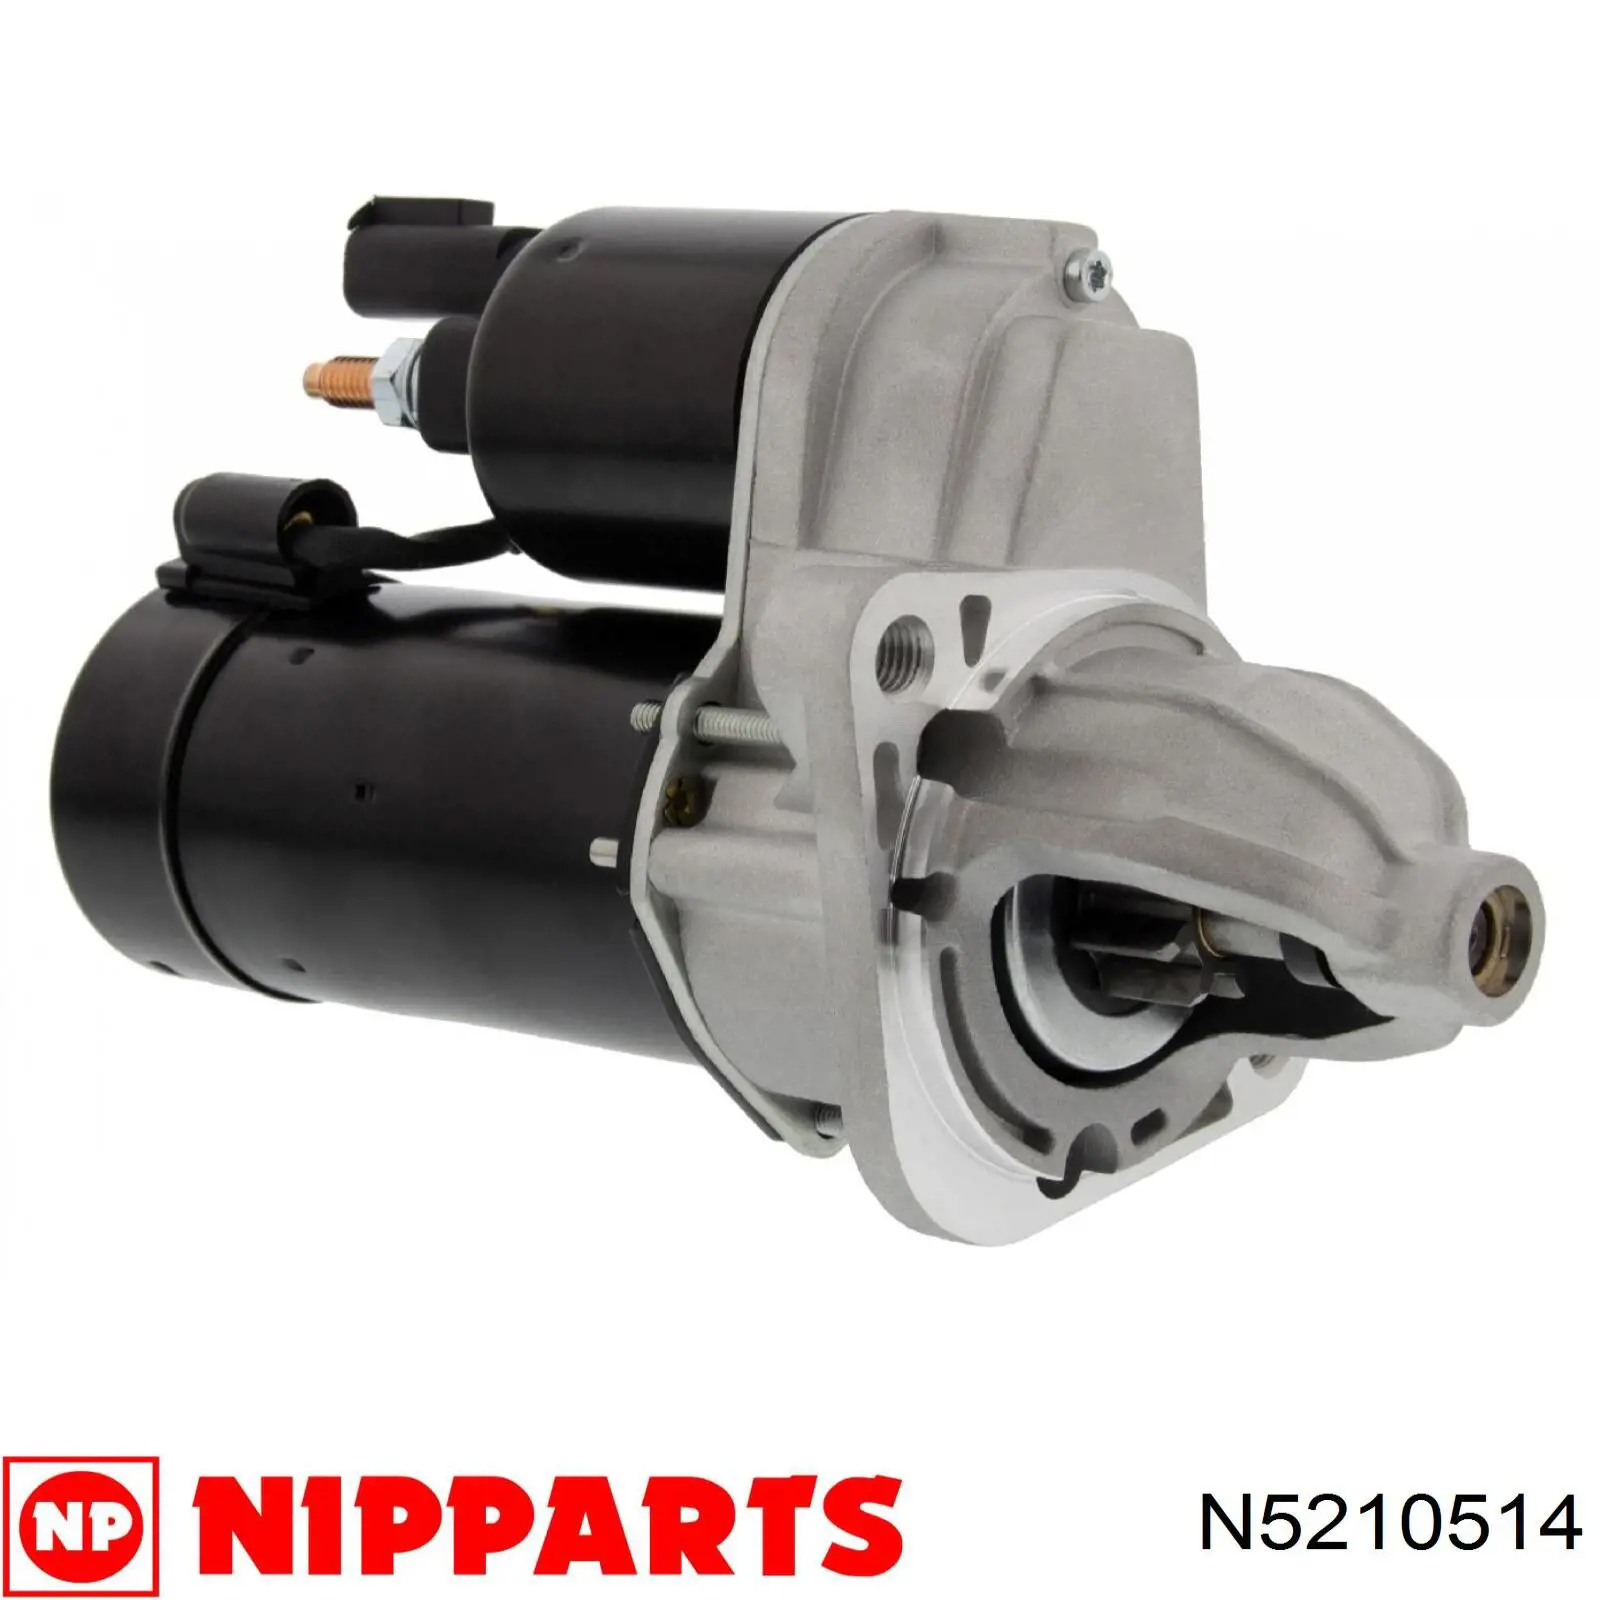 Motor de arranque N5210514 Nipparts